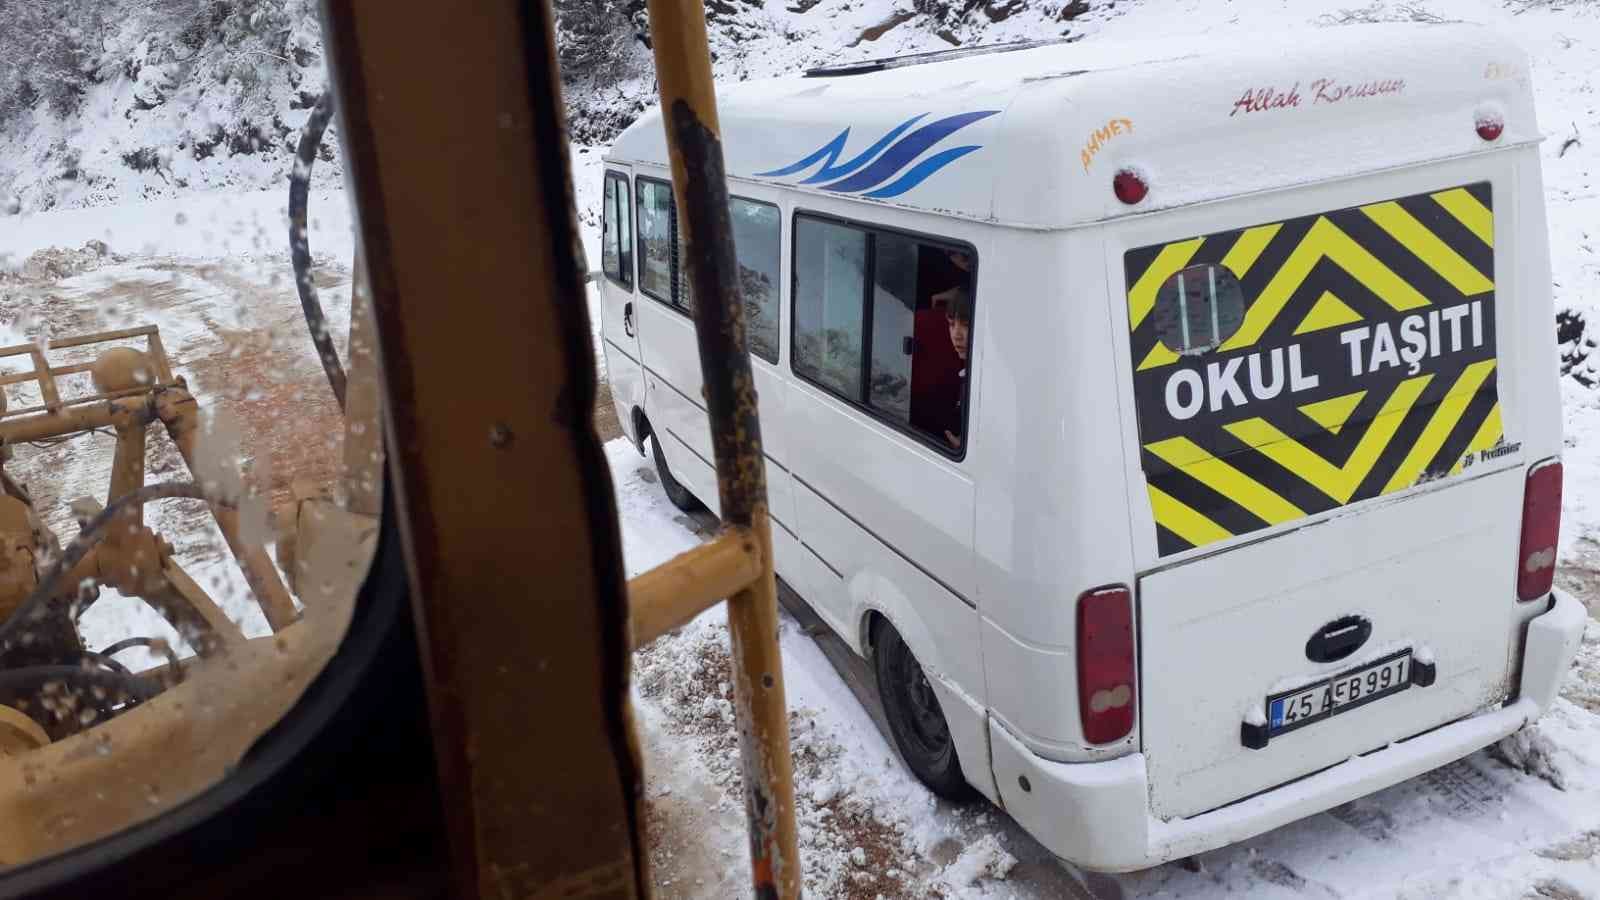 Karda mahsur kalan öğrenci servisi kurtarıldı